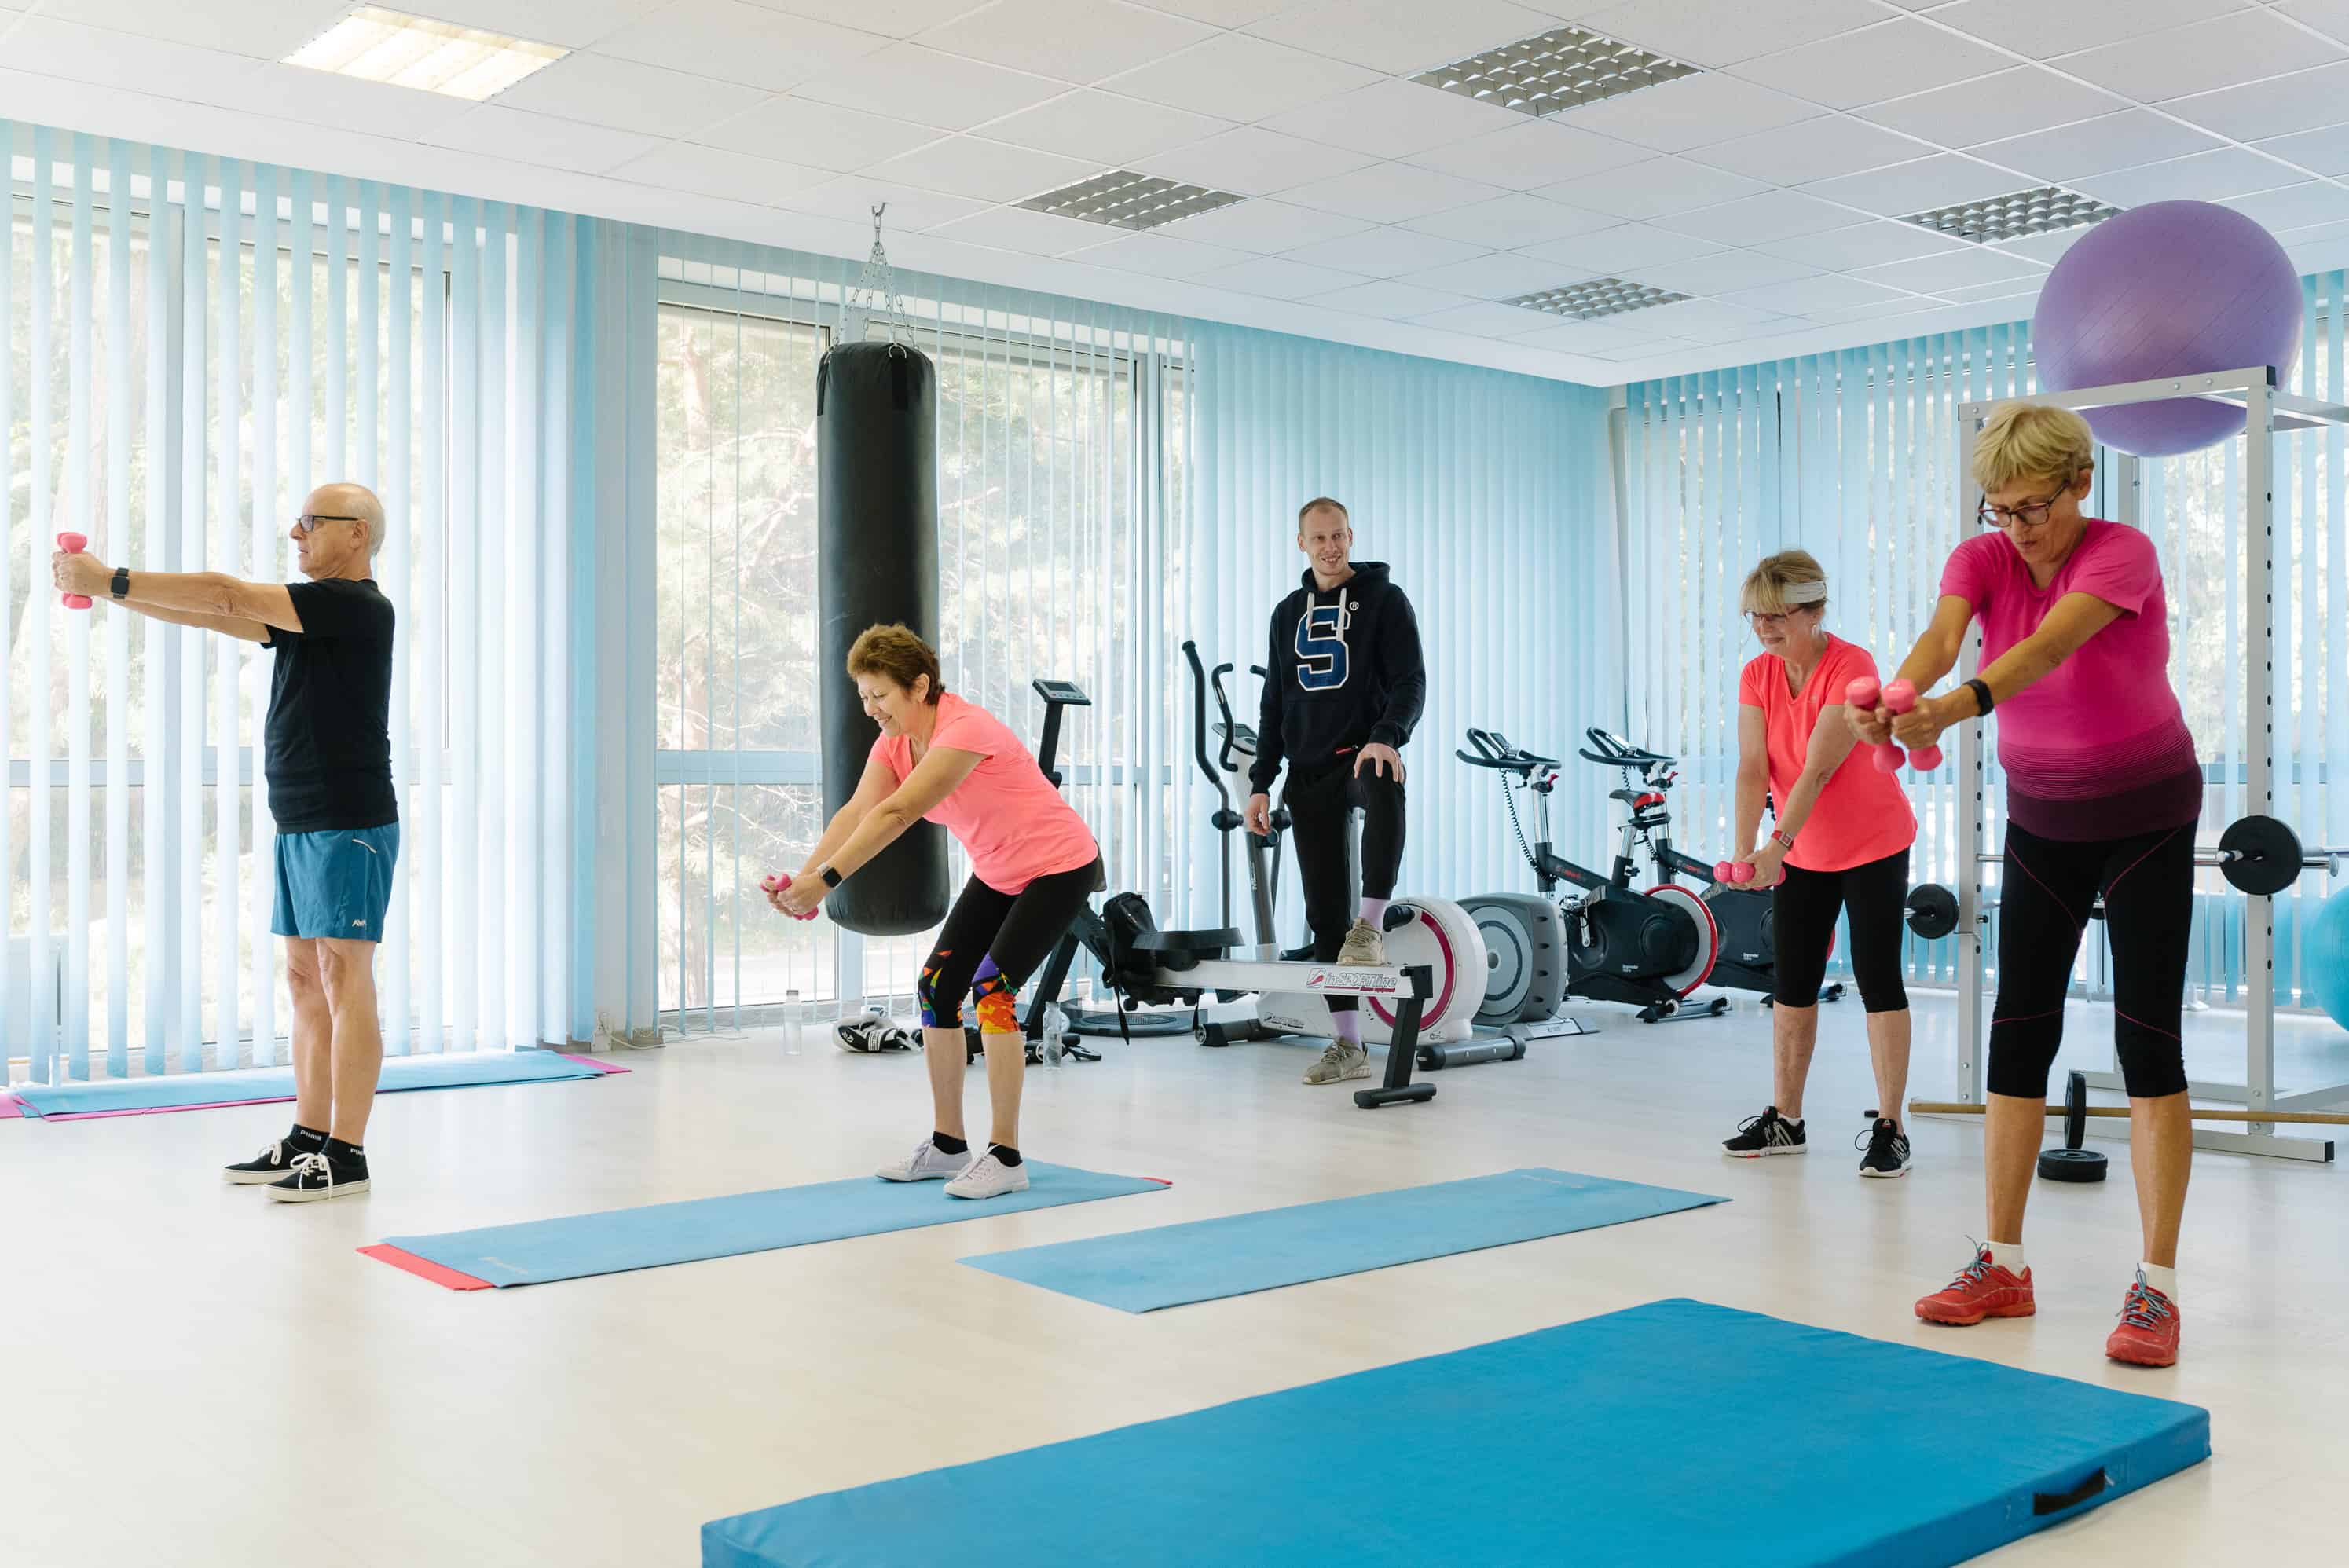 Rozhovor s trénerom Petrom Jurinom o tom, prečo je cvičenie dôležité v každom veku (+ 5 skvelých cvikov, vďaka ktorým sa budete cítiť lepšie)